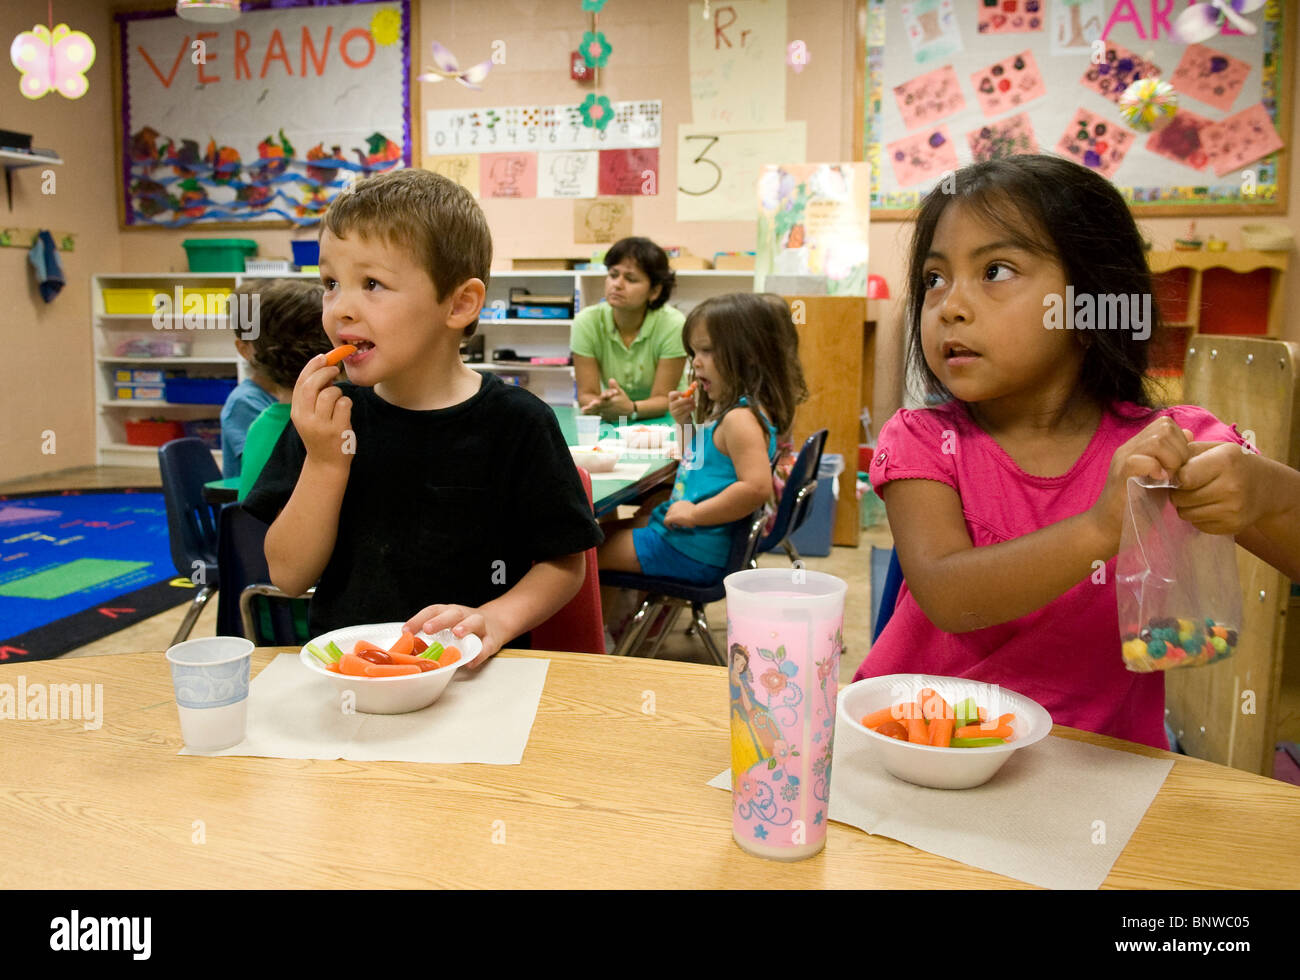 Hispanische Vorkindergarten-Alter Kinder essen Snacks in der Vorschule. Mädchen isst zuckerhaltige Getreide, während junge gesunde Karotten isst Stockfoto